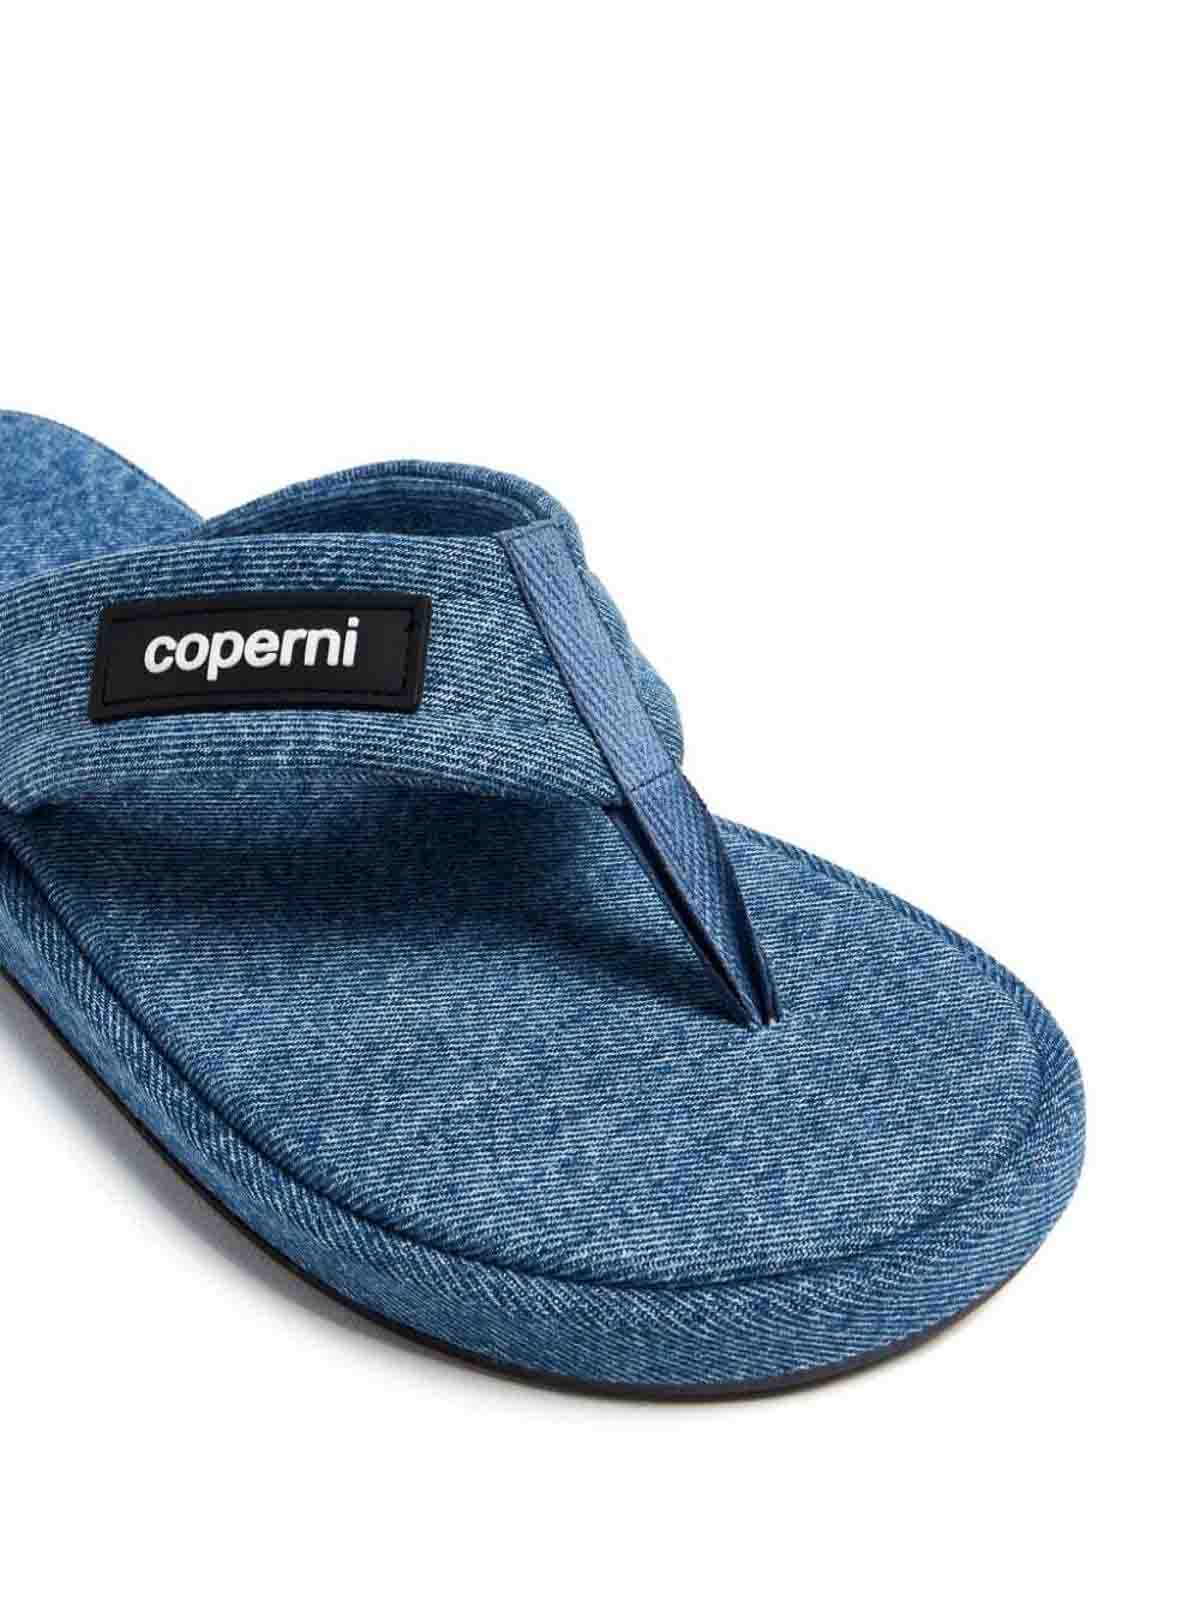 Shop Coperni Zapatos Clásicos - Lavado Medio In Medium Wash